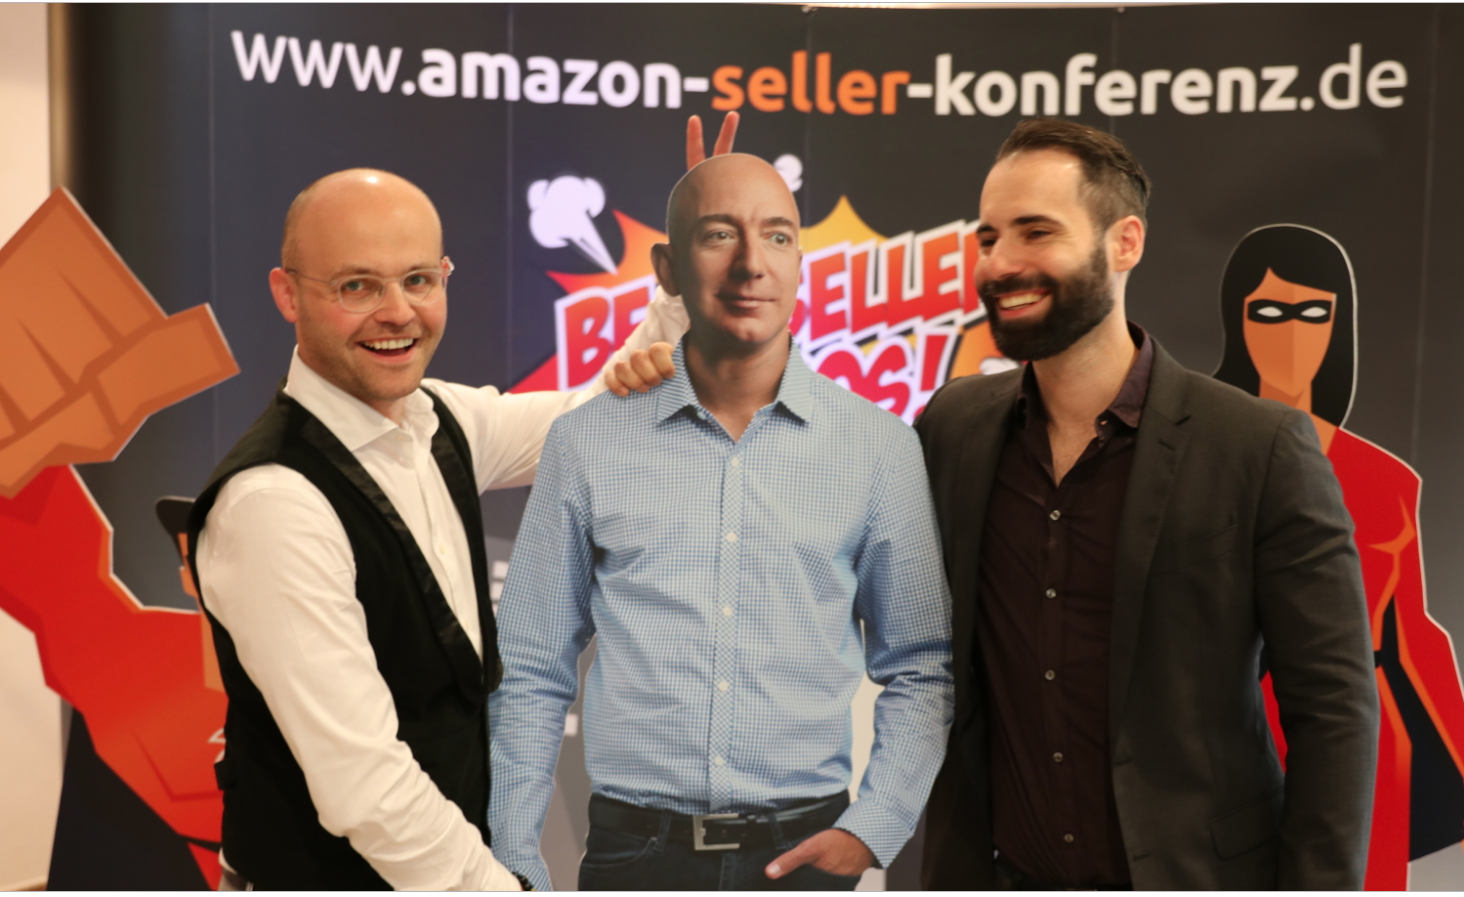 (c) Amazon-seller-konferenz.de